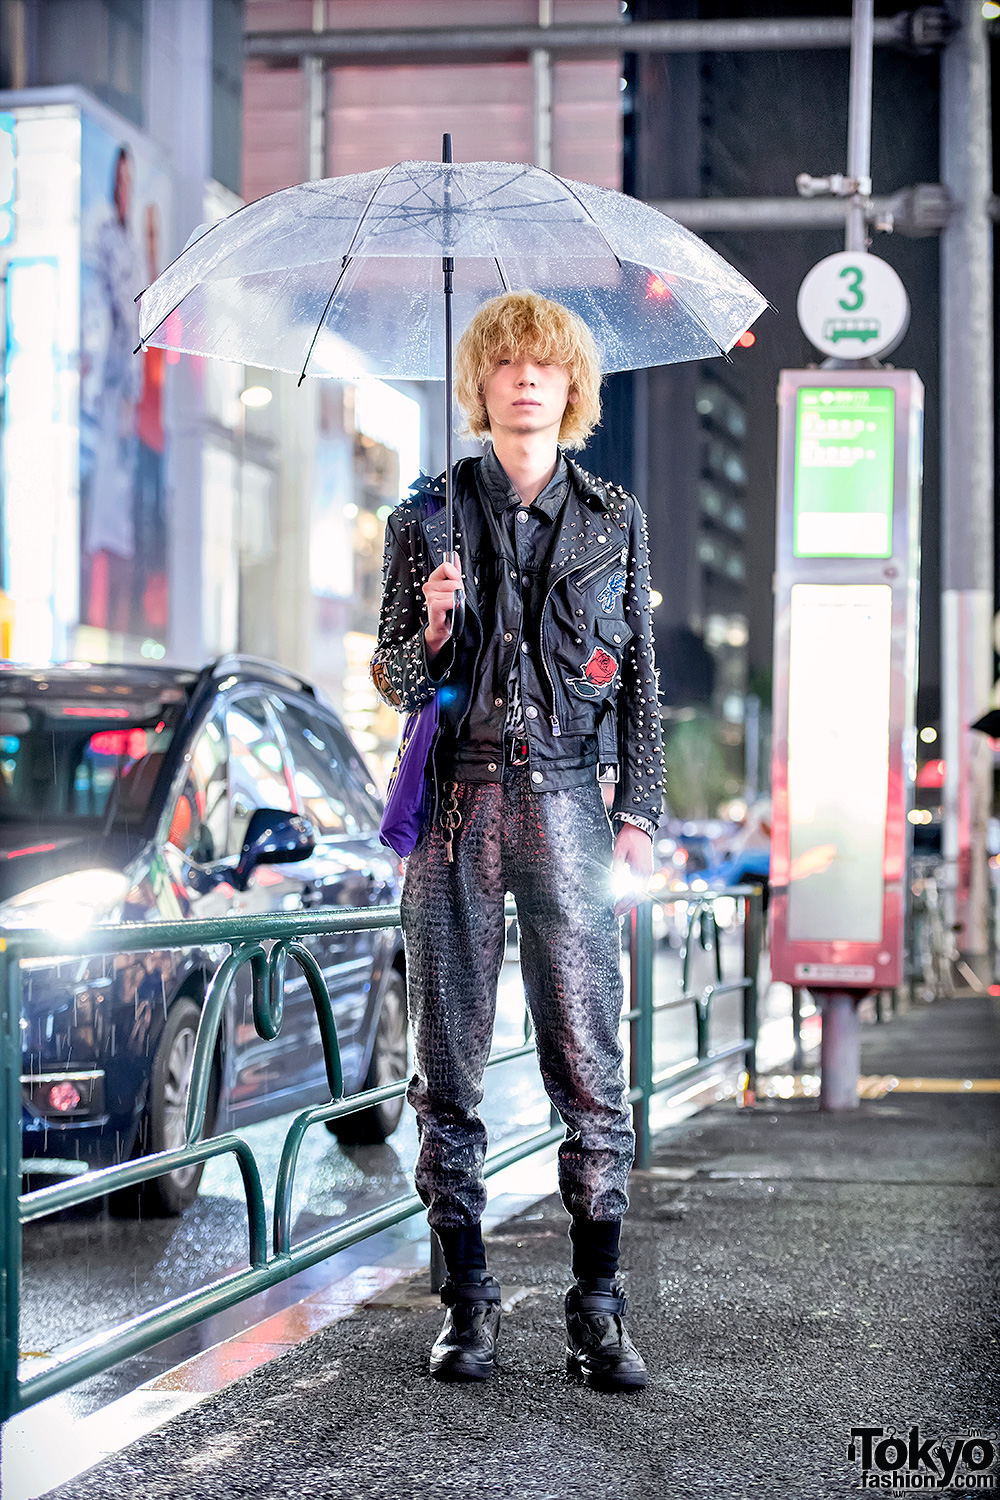 Rainy Weather Harajuku Street Style w/ Studded Leather Jacket